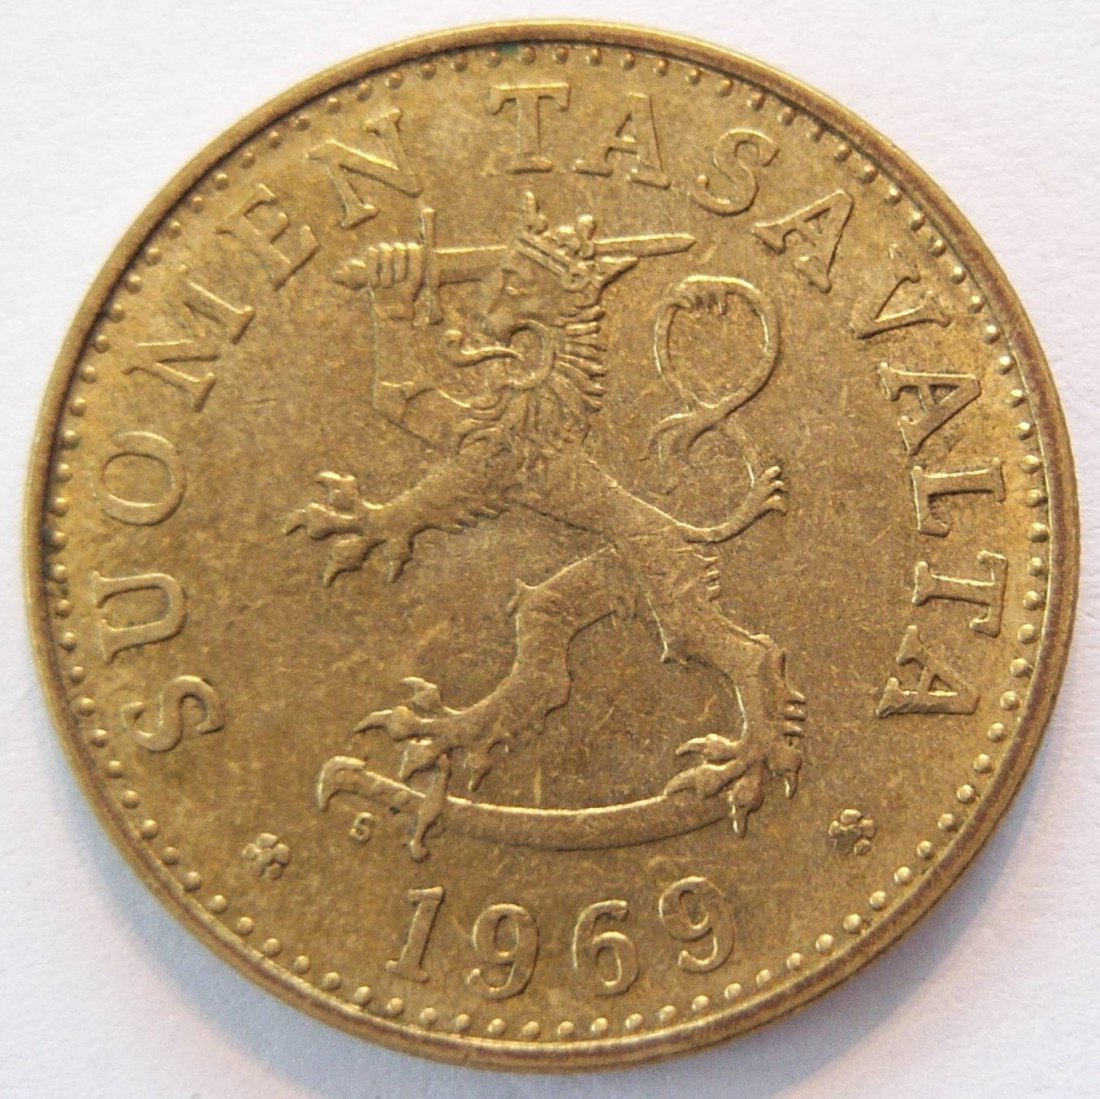  Finnland 50 Penniä 1969   